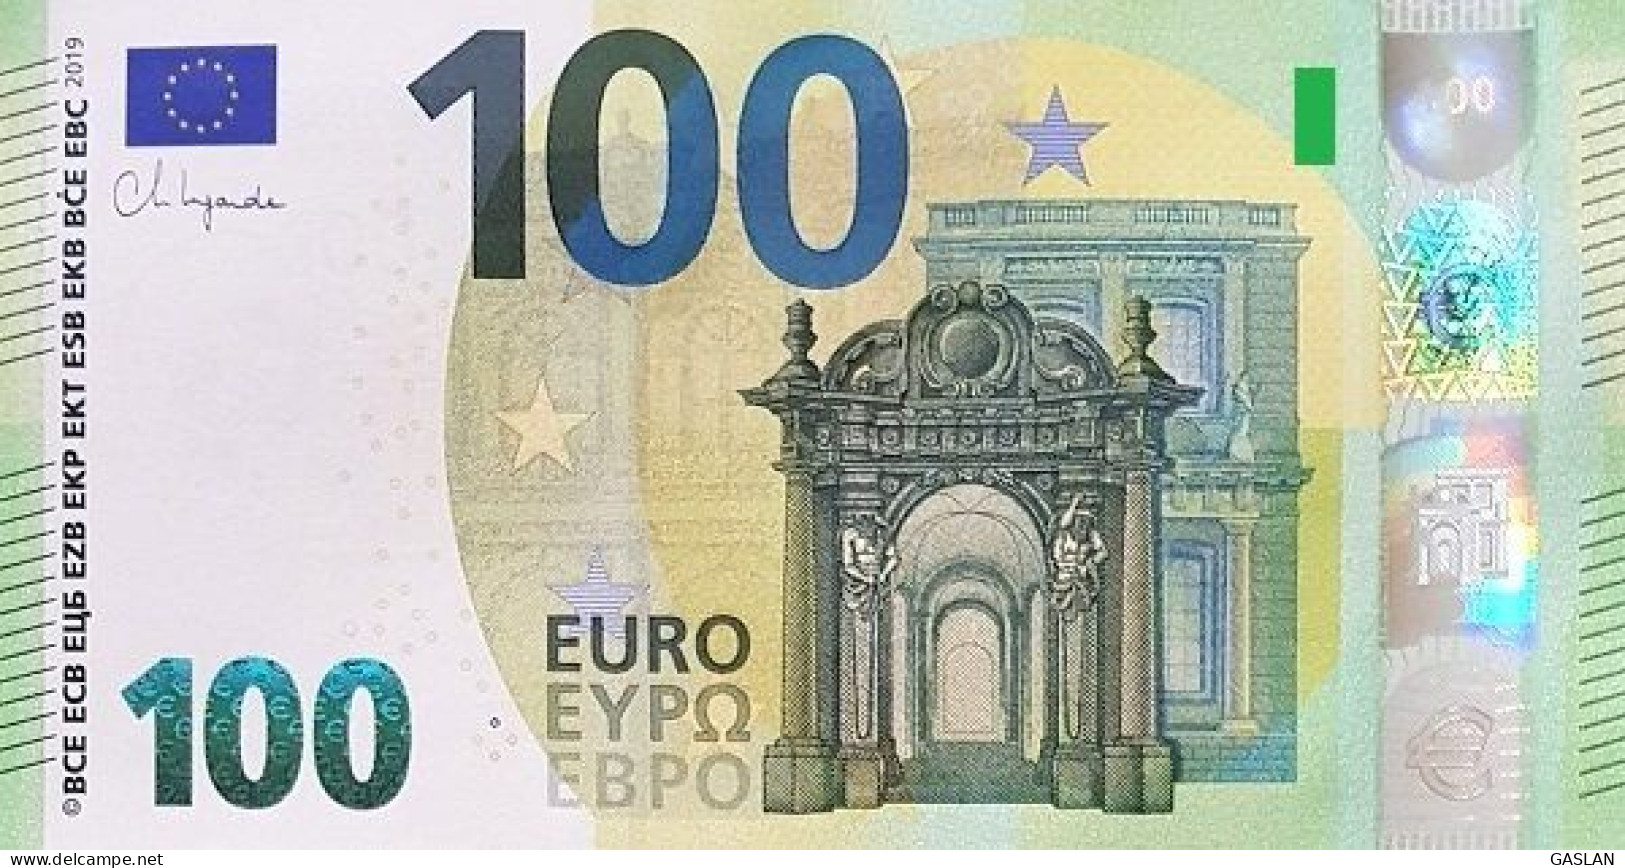 GERMANY 100 WA W001 A1 W002 A1 W003 A1 W004 A1 UNC LAGARDE ONLY ONE - 100 Euro